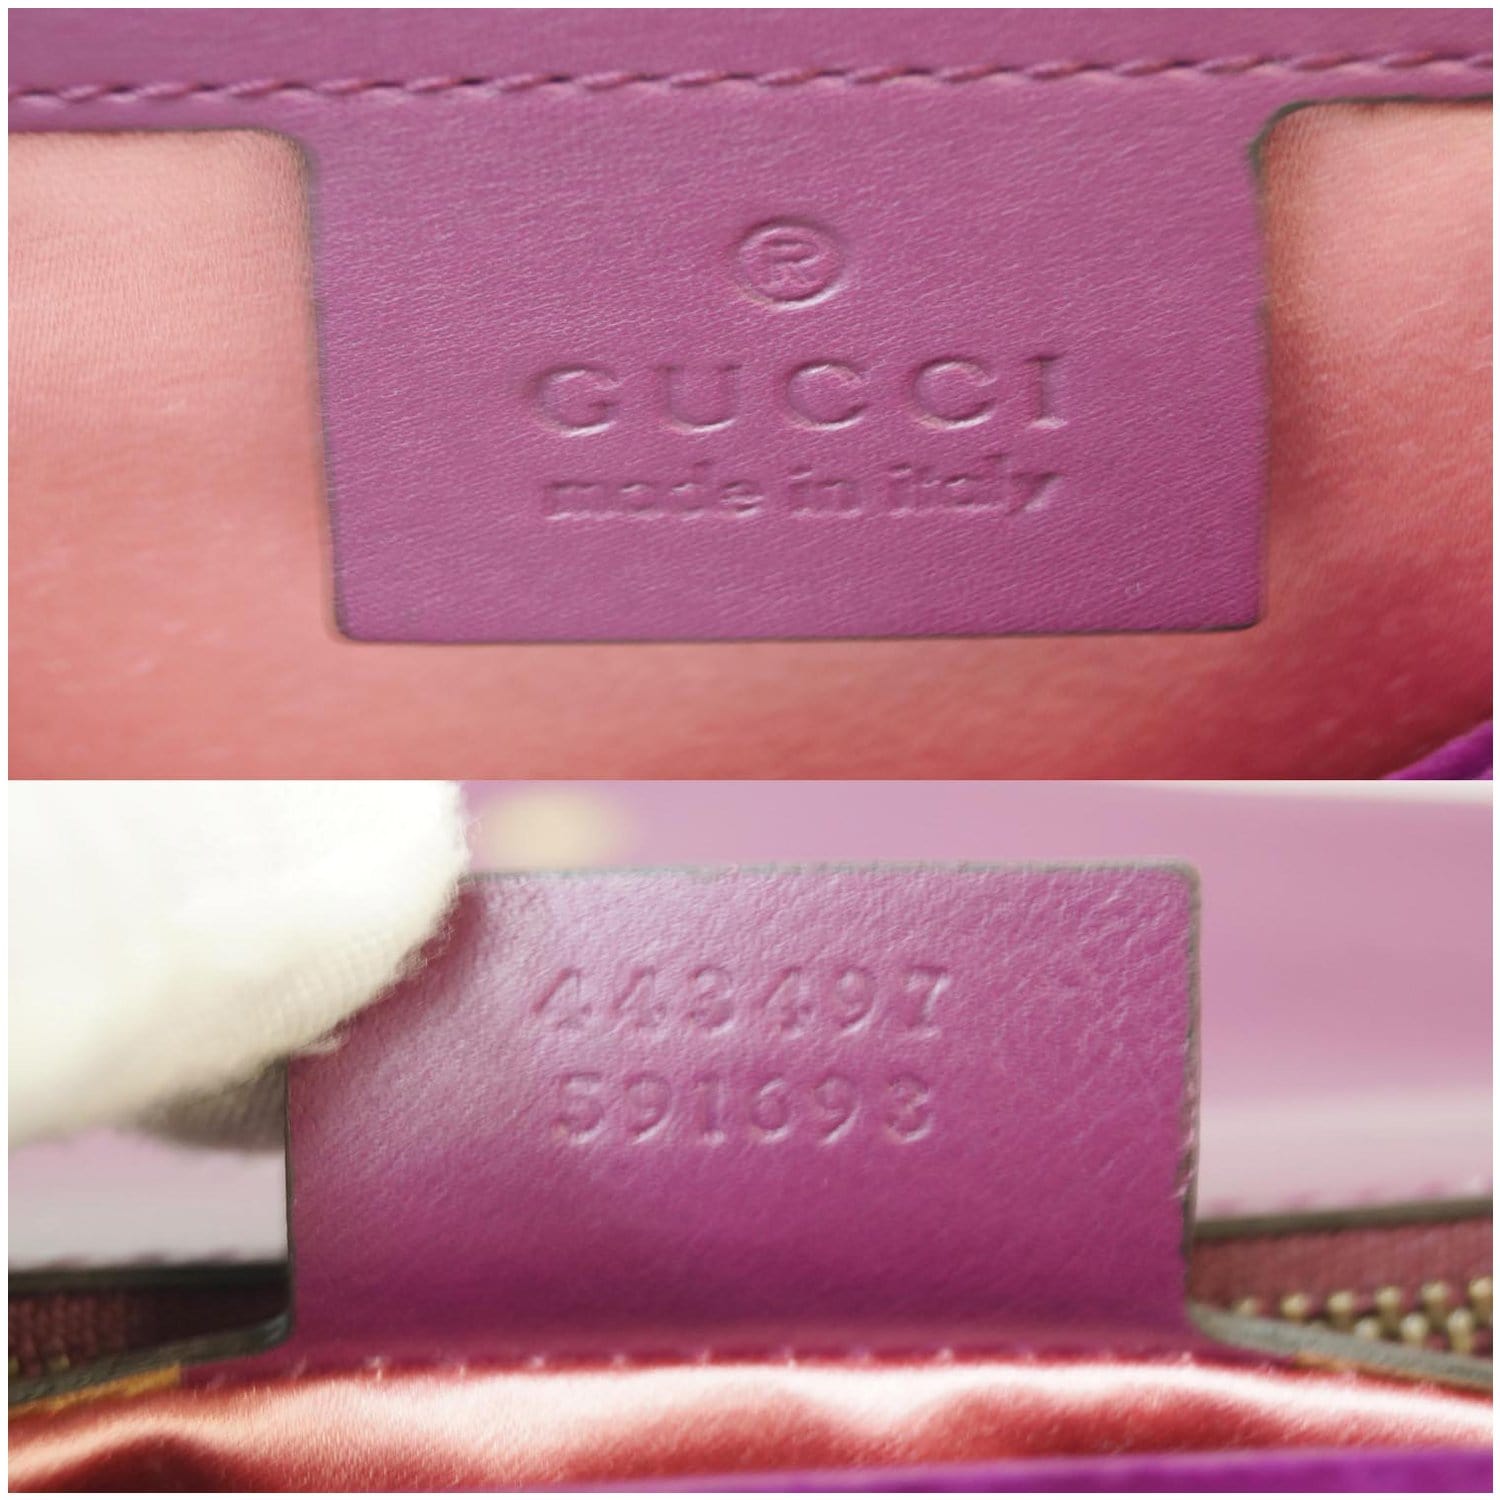 Gg marmont flap velvet crossbody bag Gucci Purple in Velvet - 36100494